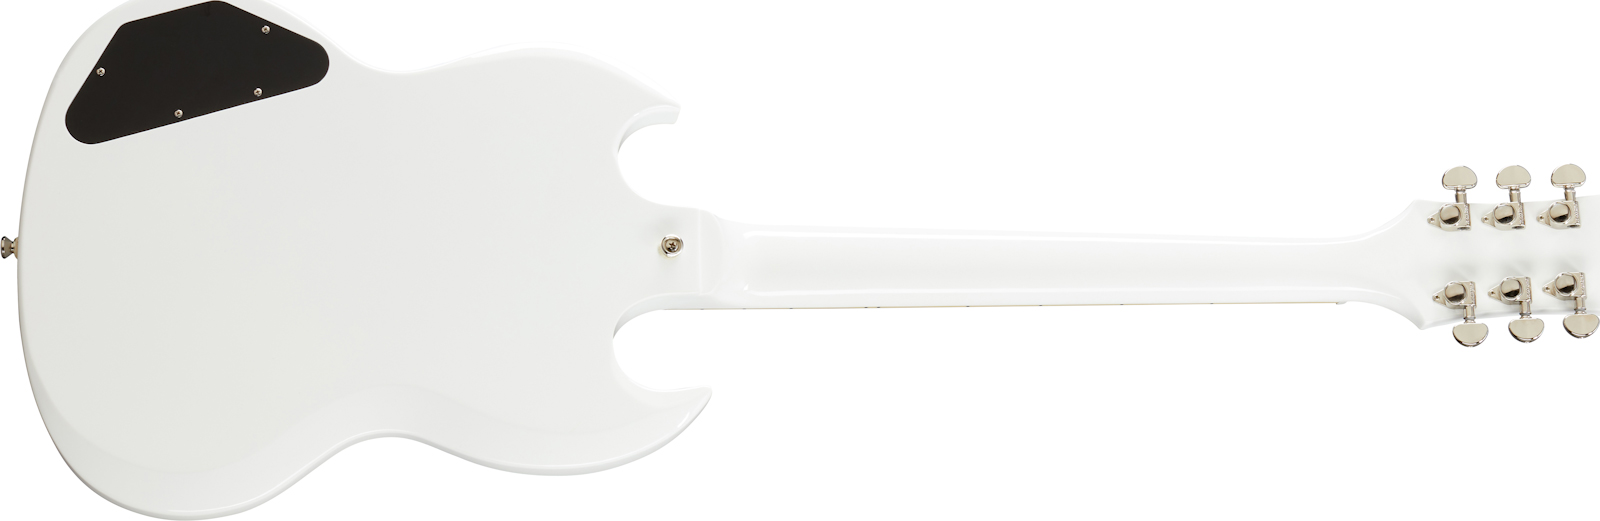 Epiphone Sg Standard Lh Gaucher 2h Ht Lau - Alpine White - Guitarra electrica para zurdos - Variation 1